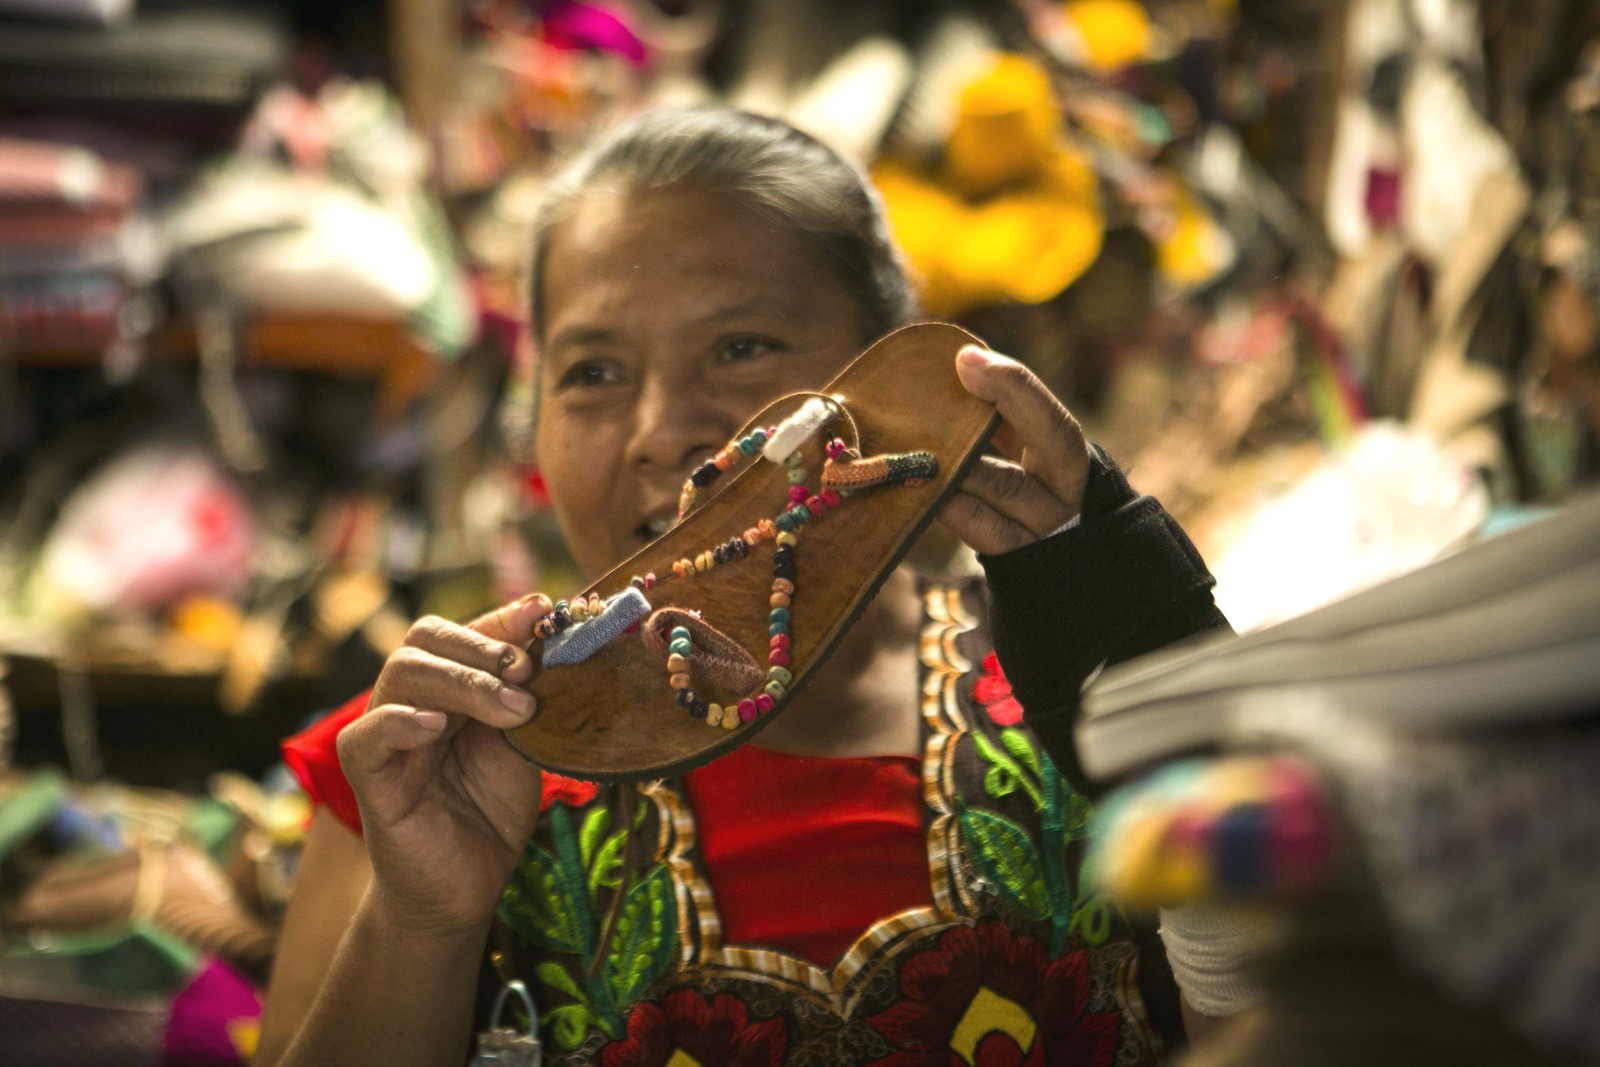 Protagonistas. El colectivo Ndavaa, de Oaxaca, se dedica a elaborar sandalias, calzado artesanal y modelos del que exportan hasta 40 toneladas de producto a varios países, de Europa y América. (CORTESÍA)